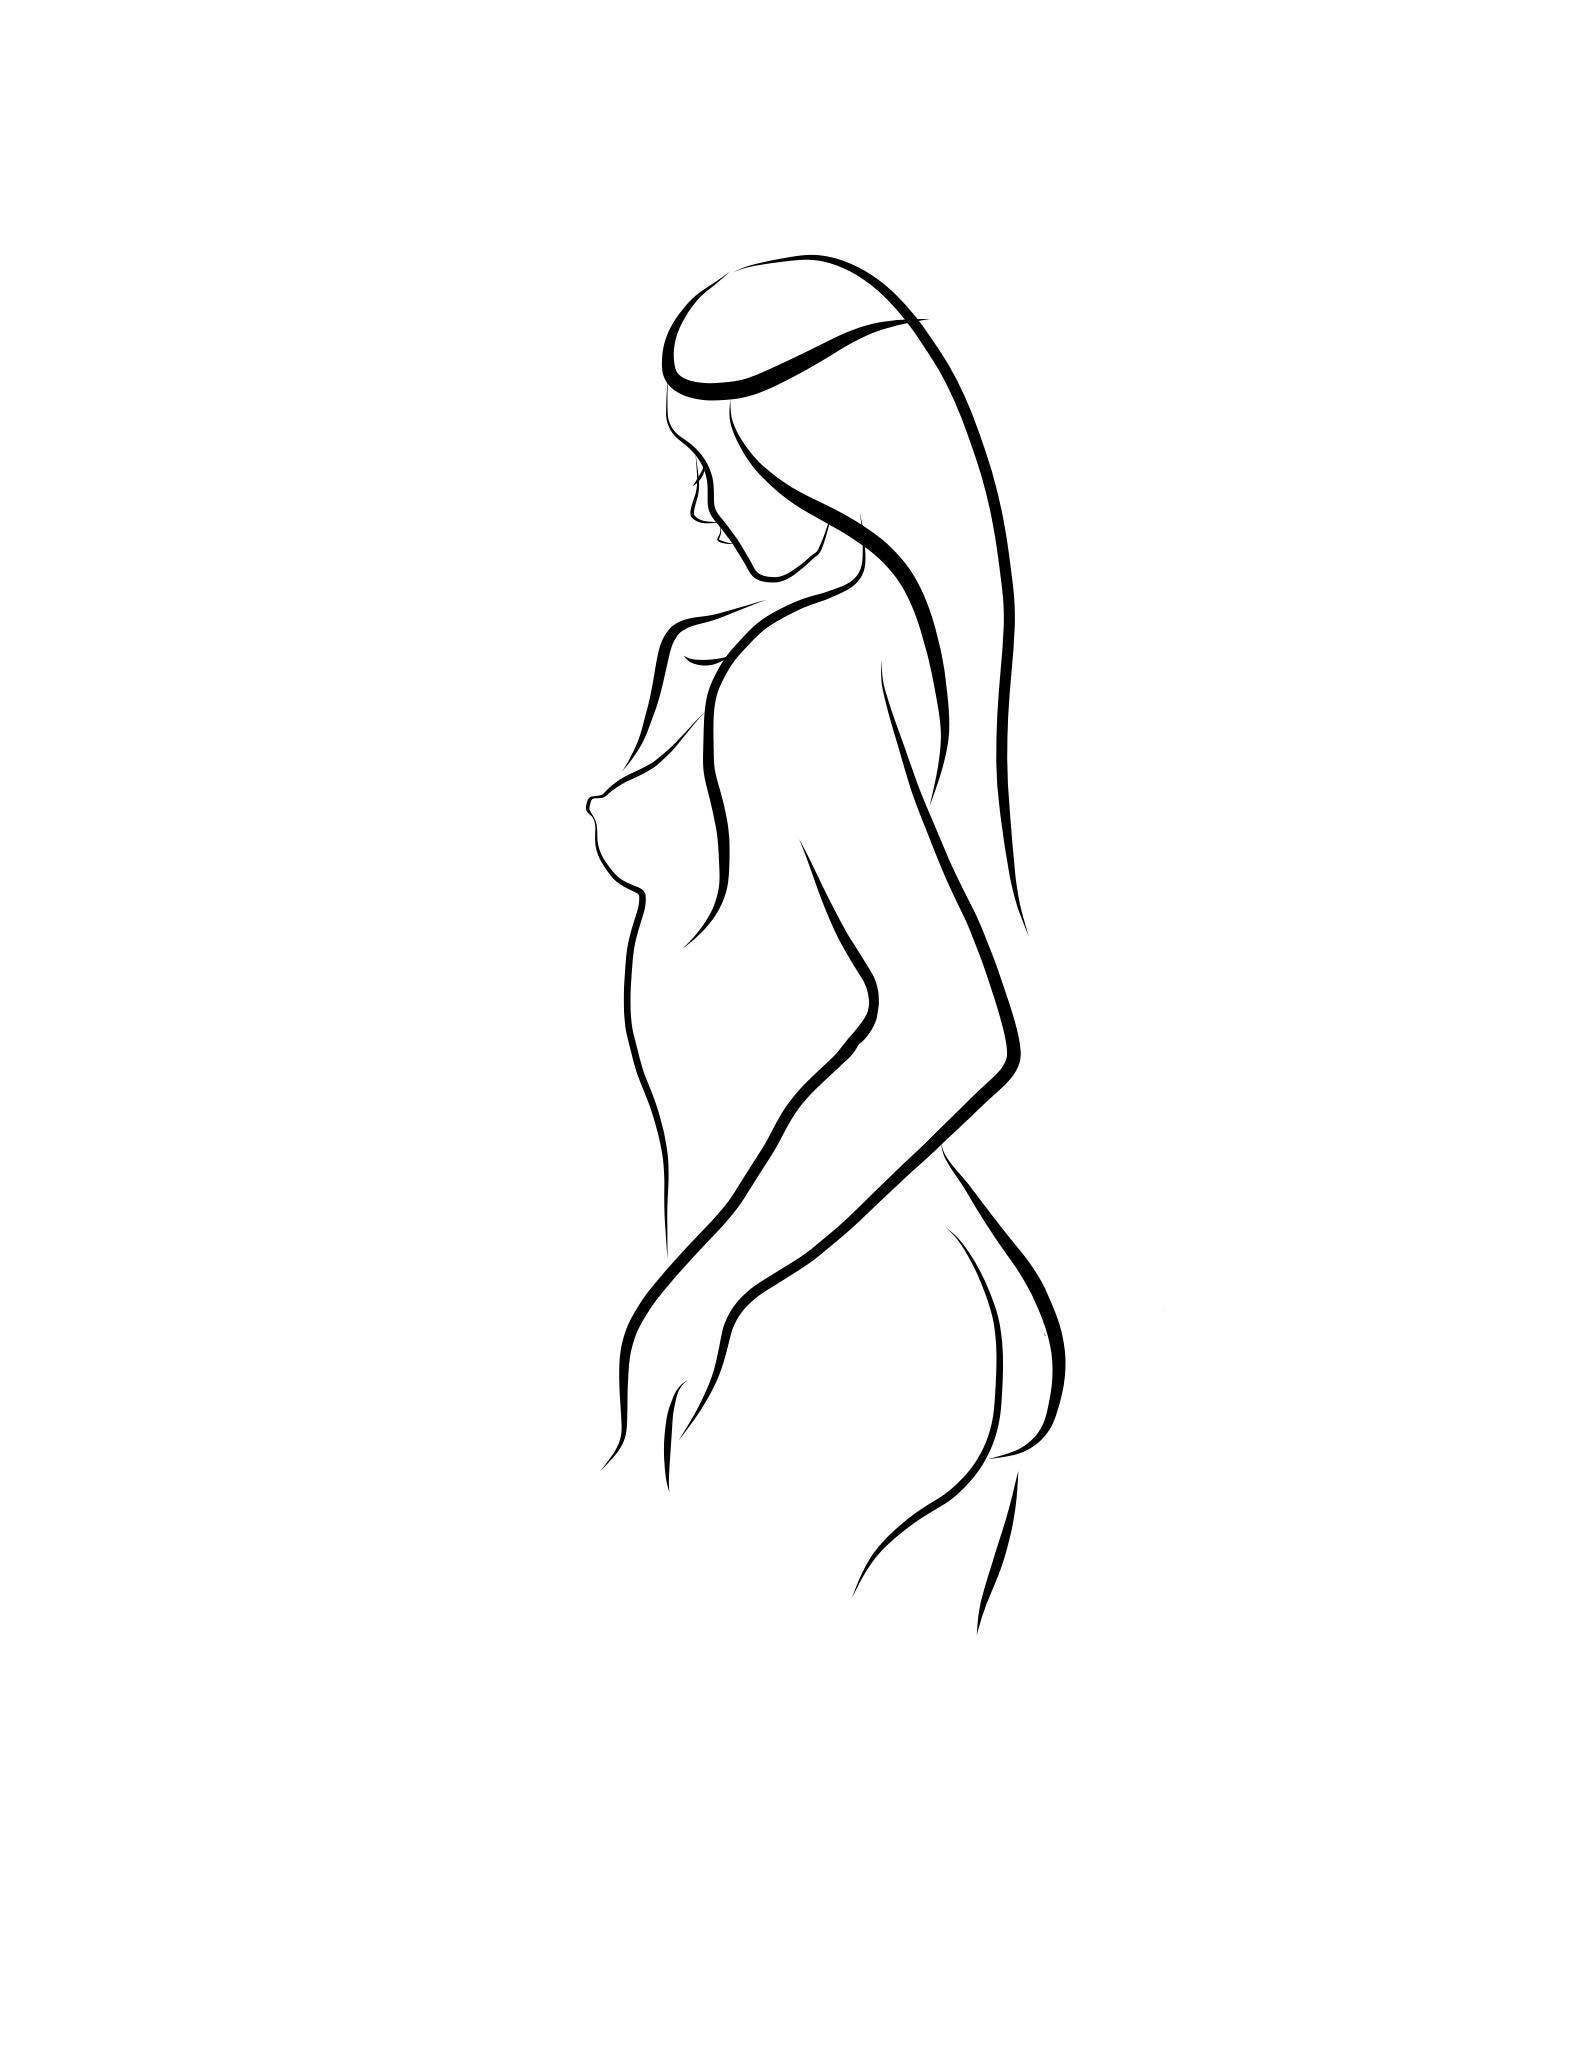 Michael Binkley Nude Print - Haiku #5   - Digital Vector Drawing Standing Female Nude Woman Figure from Rear